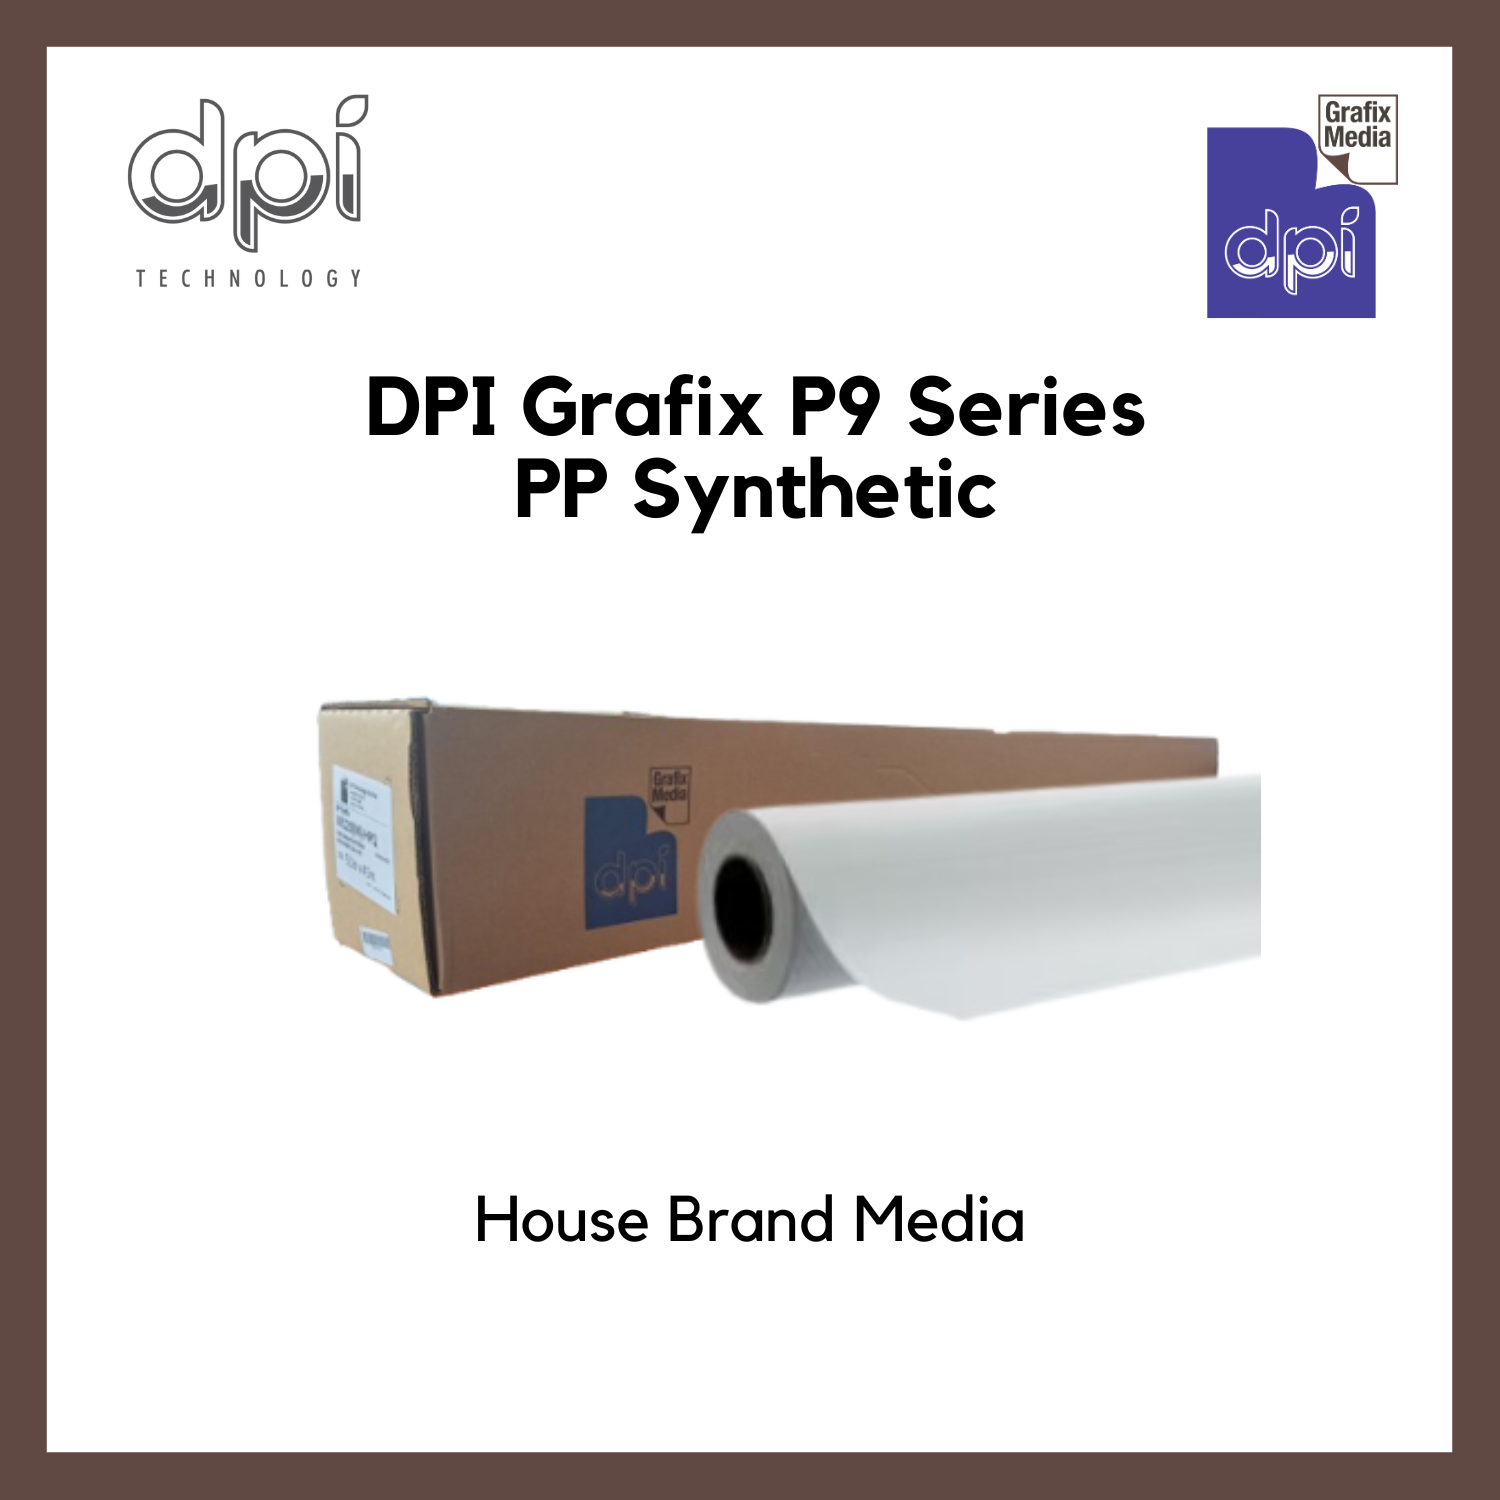 DPI Grafix P9 PP Synthetic